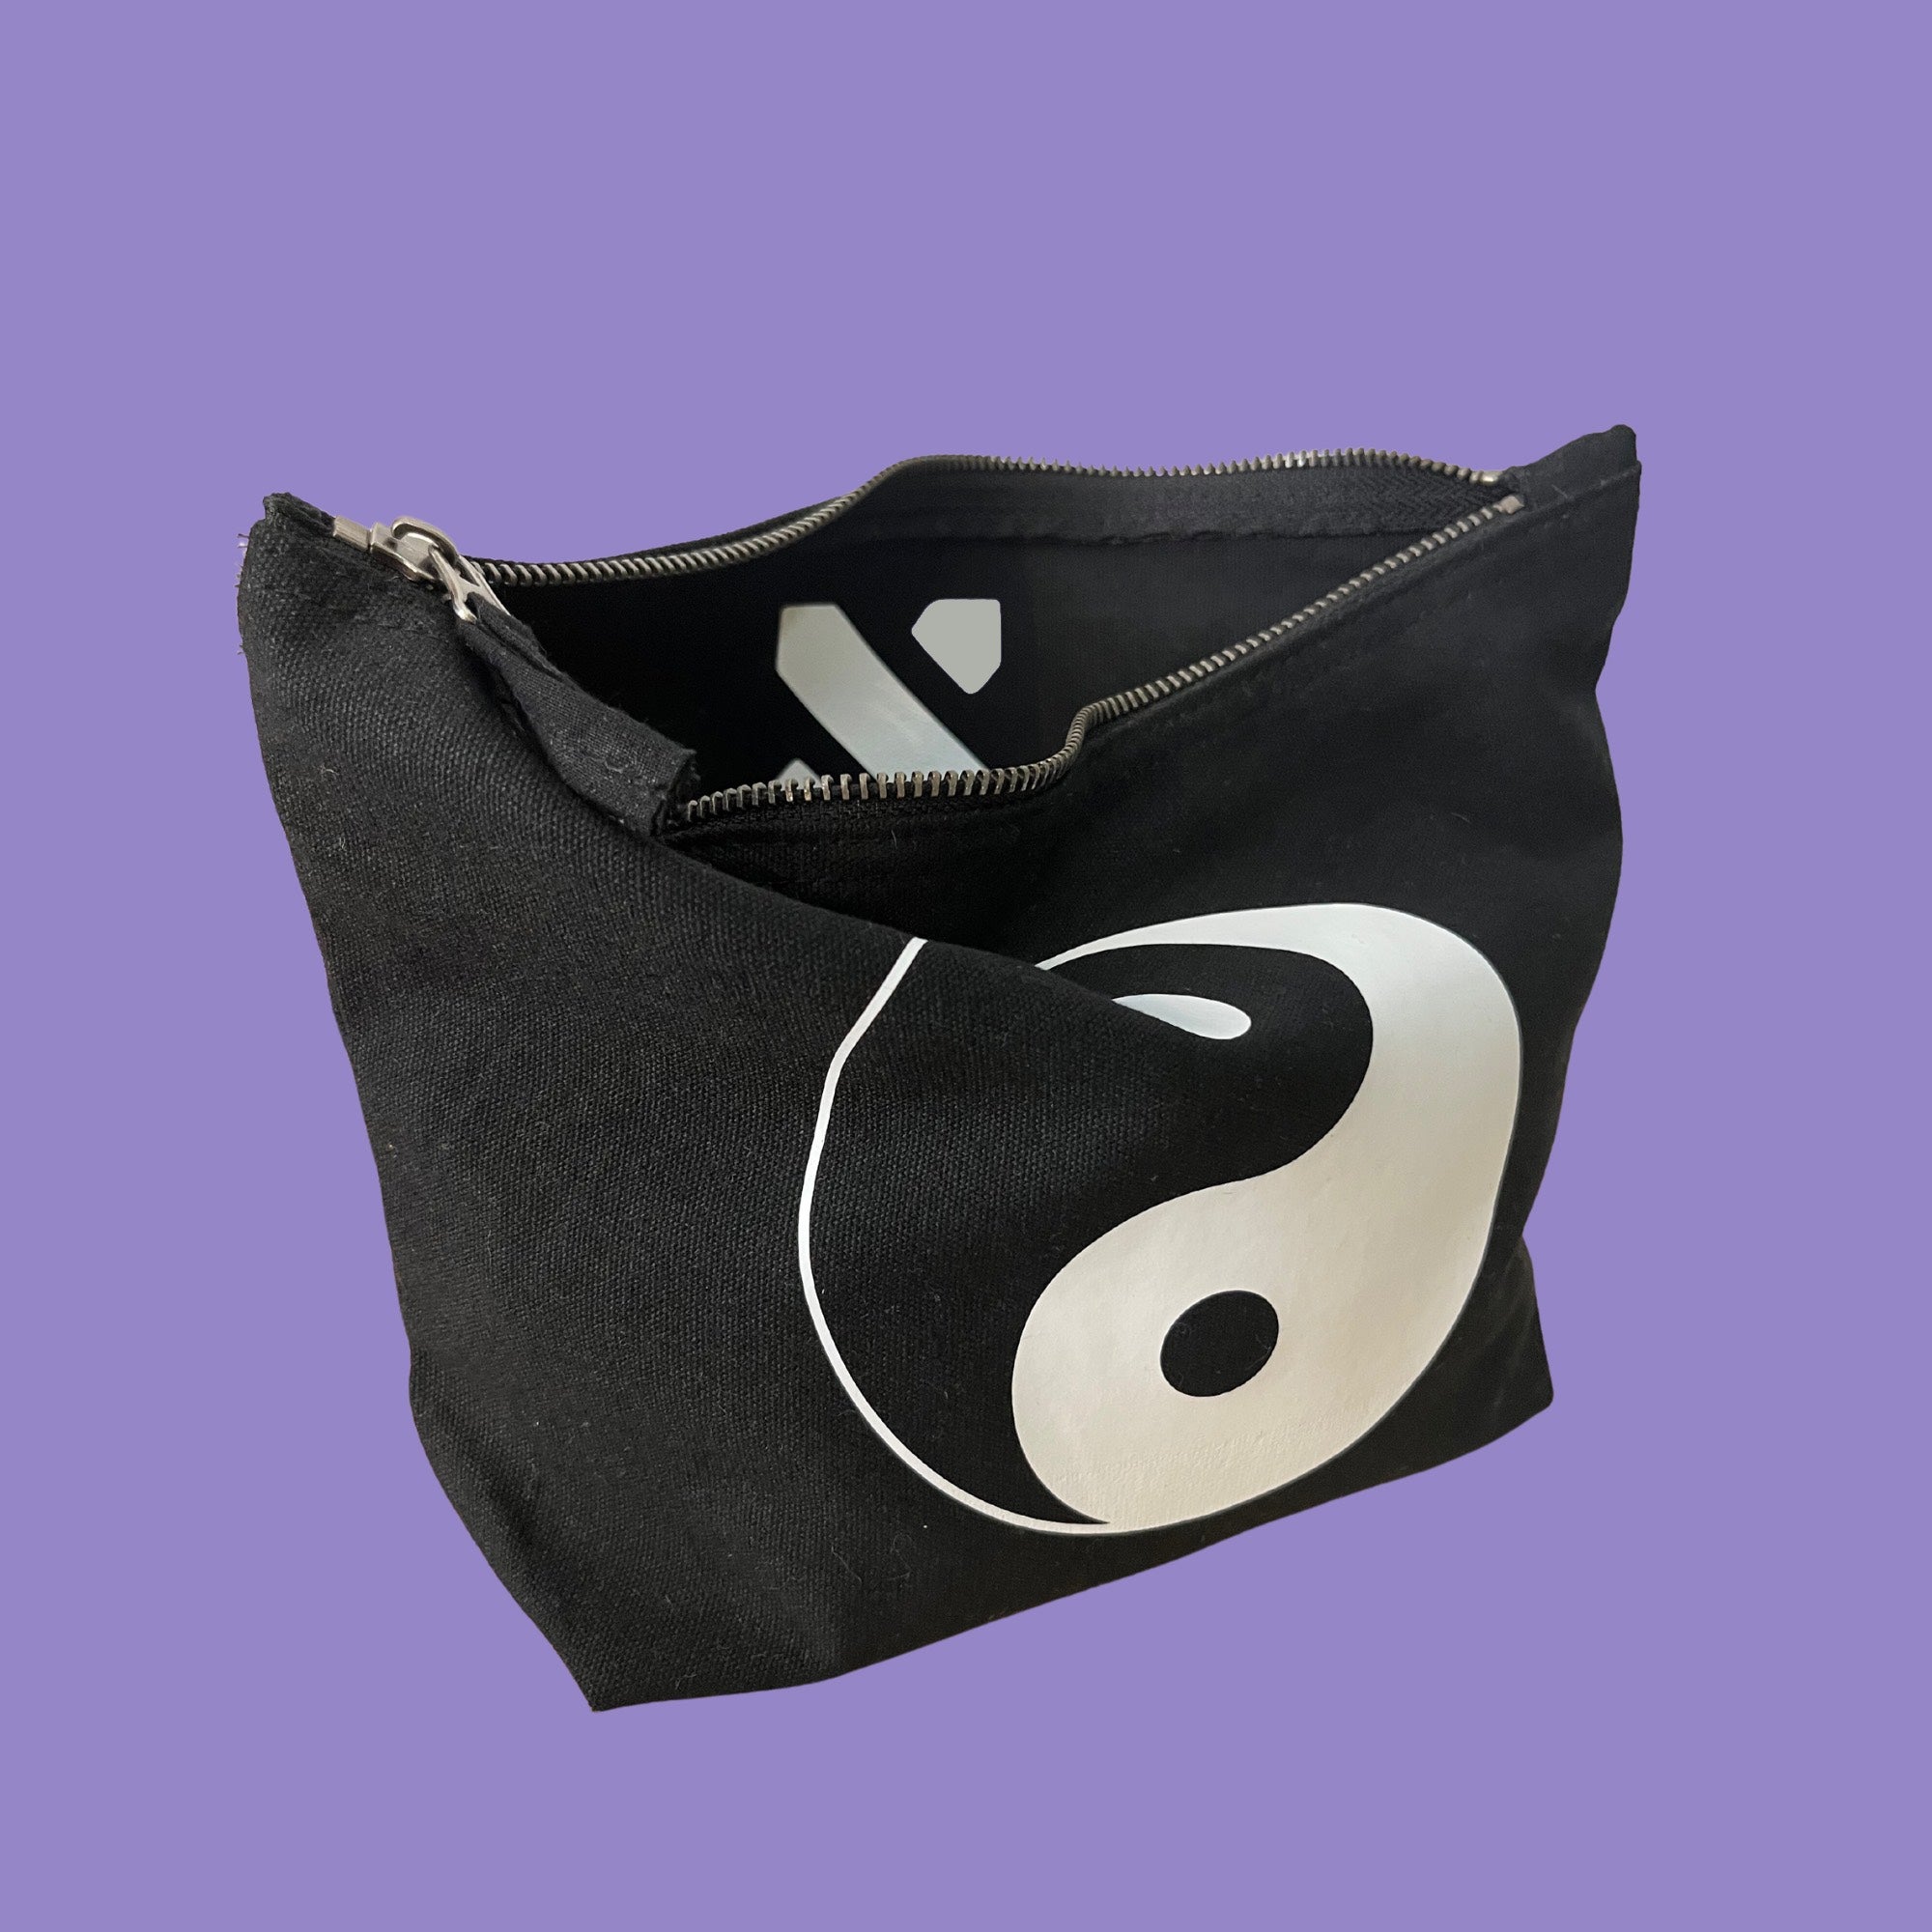 Ying Yang zip bag